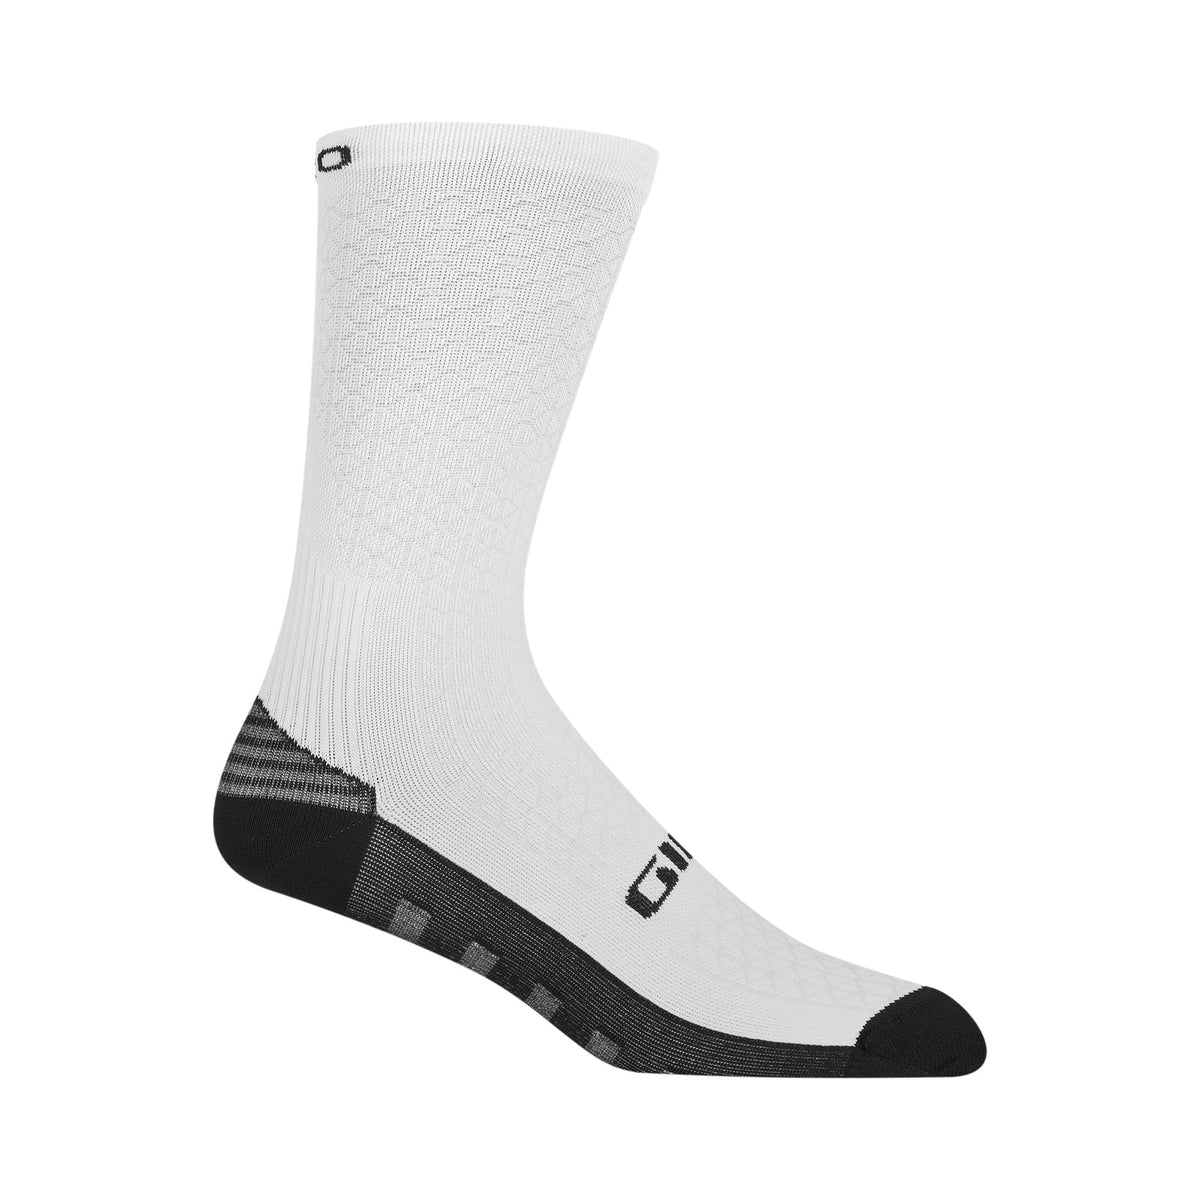 Giro Hrc+ Grip Cycling Socks